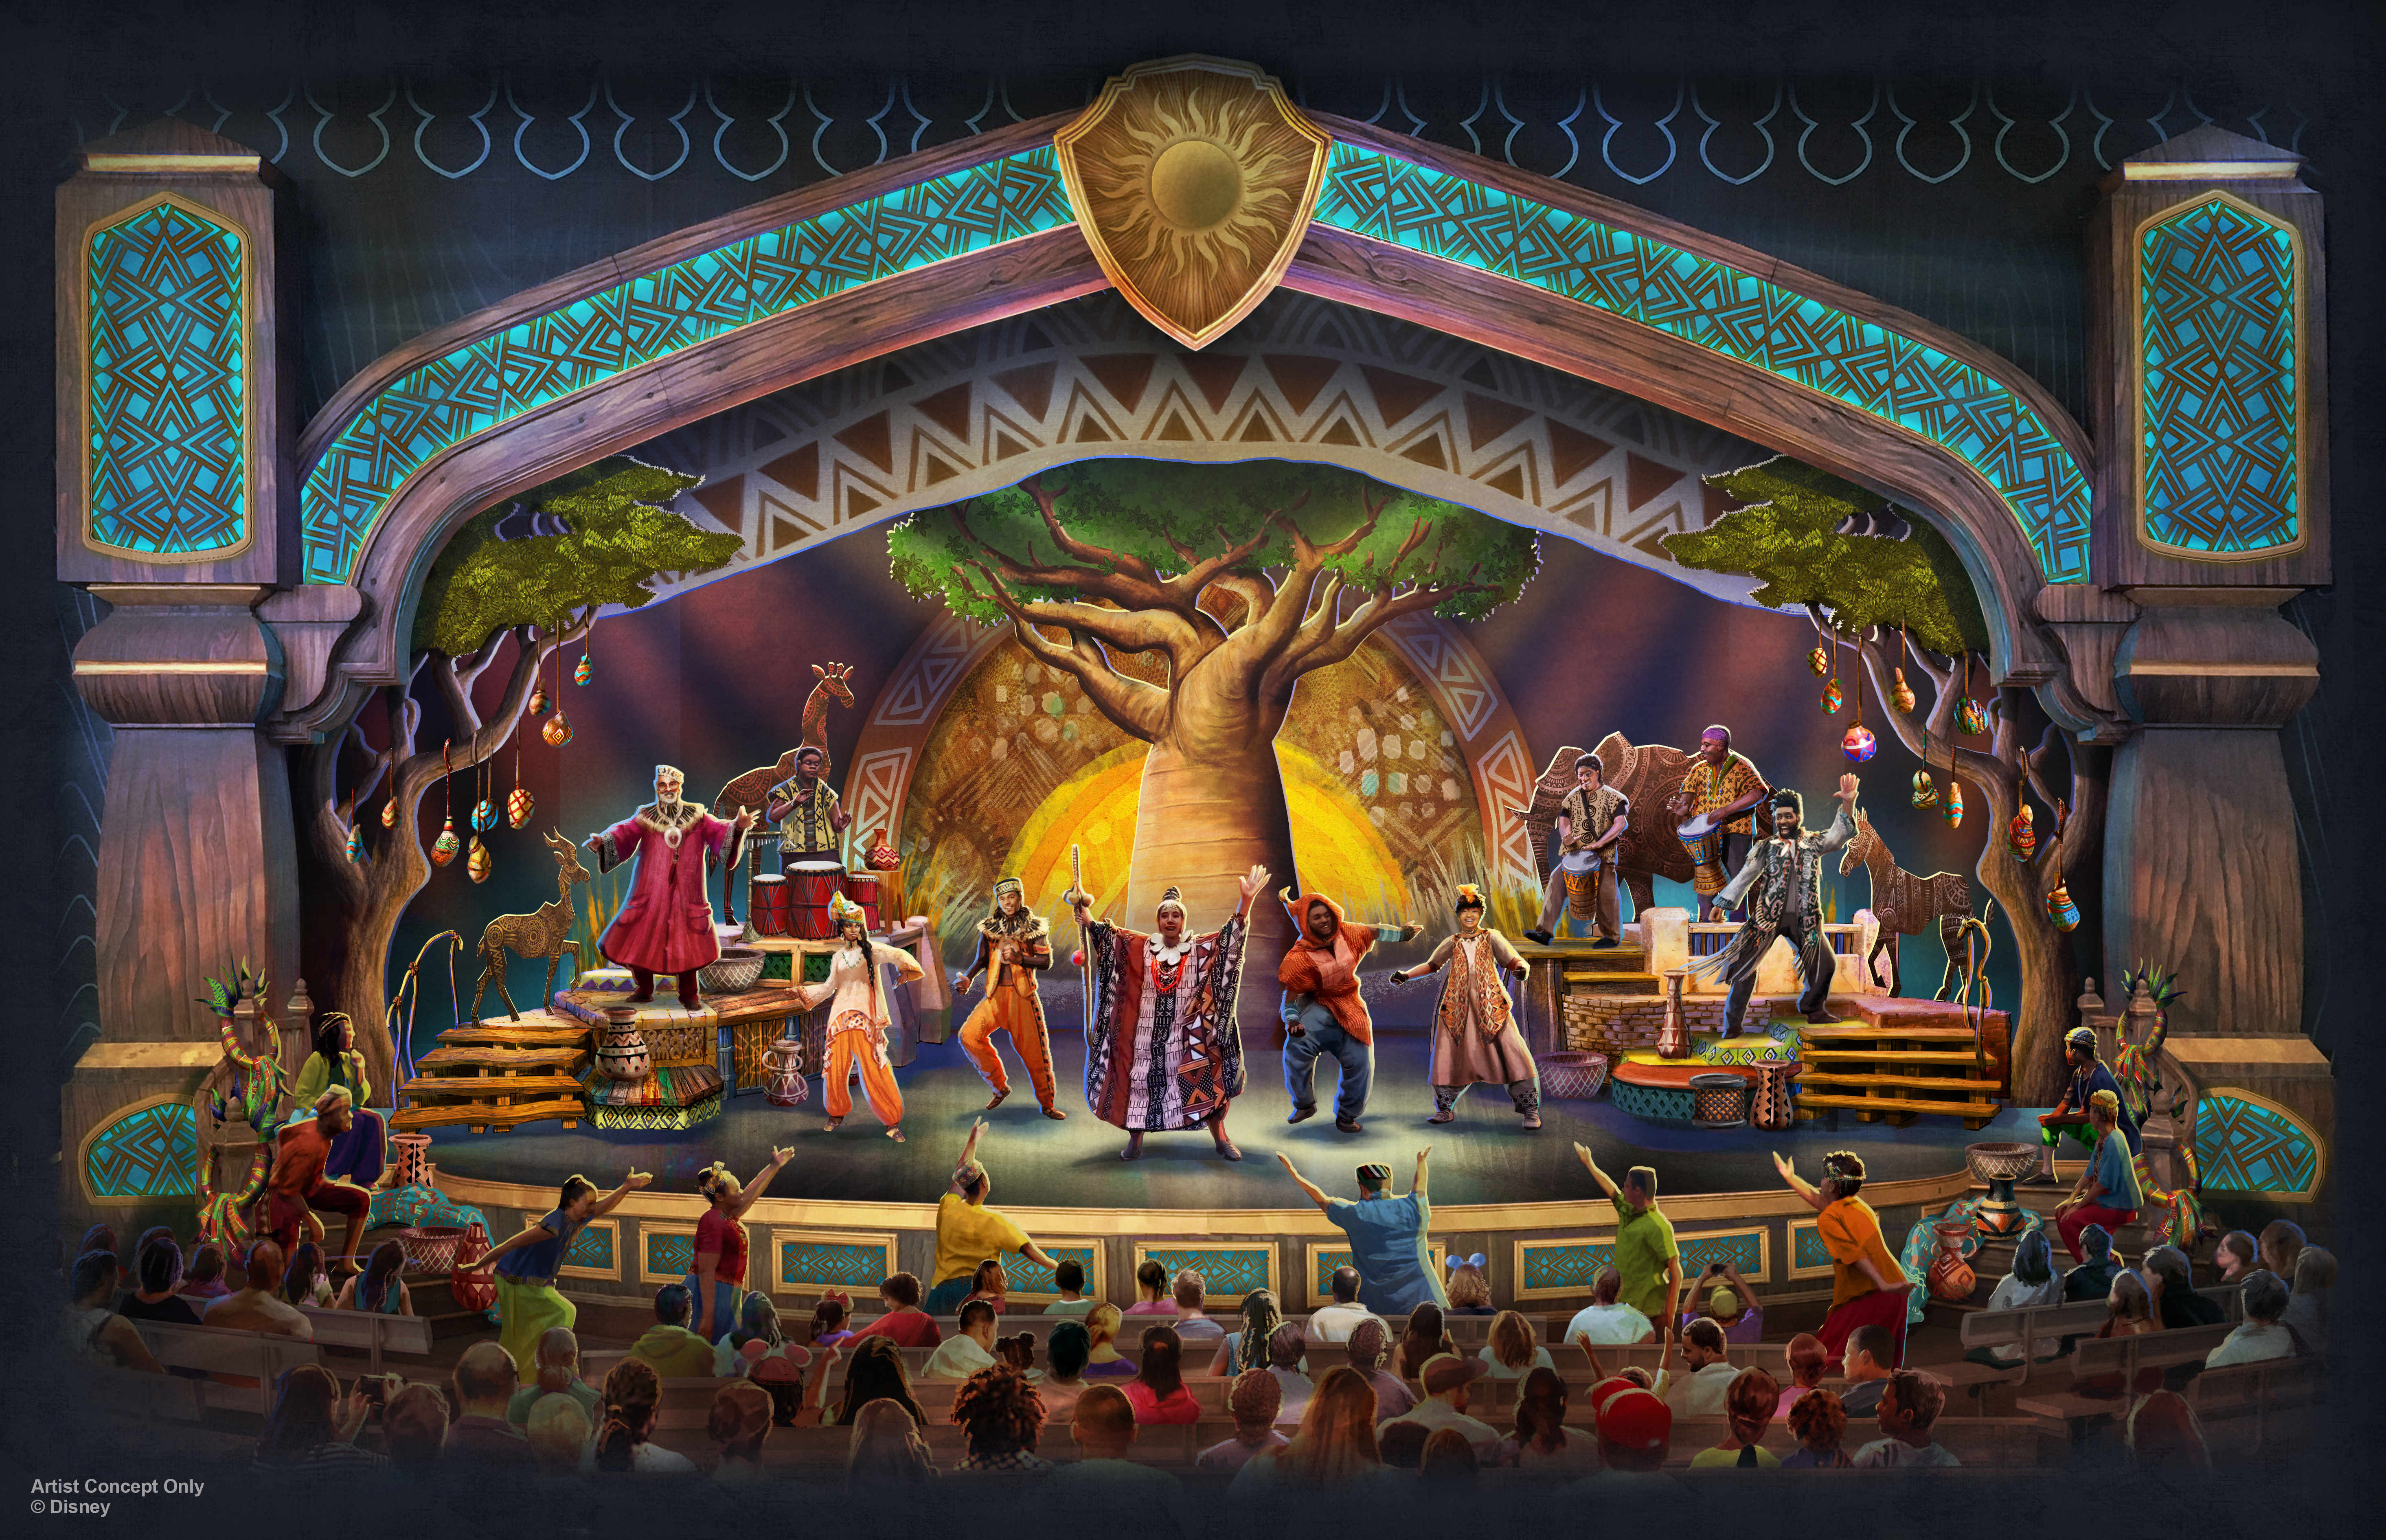 Show inspirado em “O Rei Leão” já tem data de estreia na Disneyland